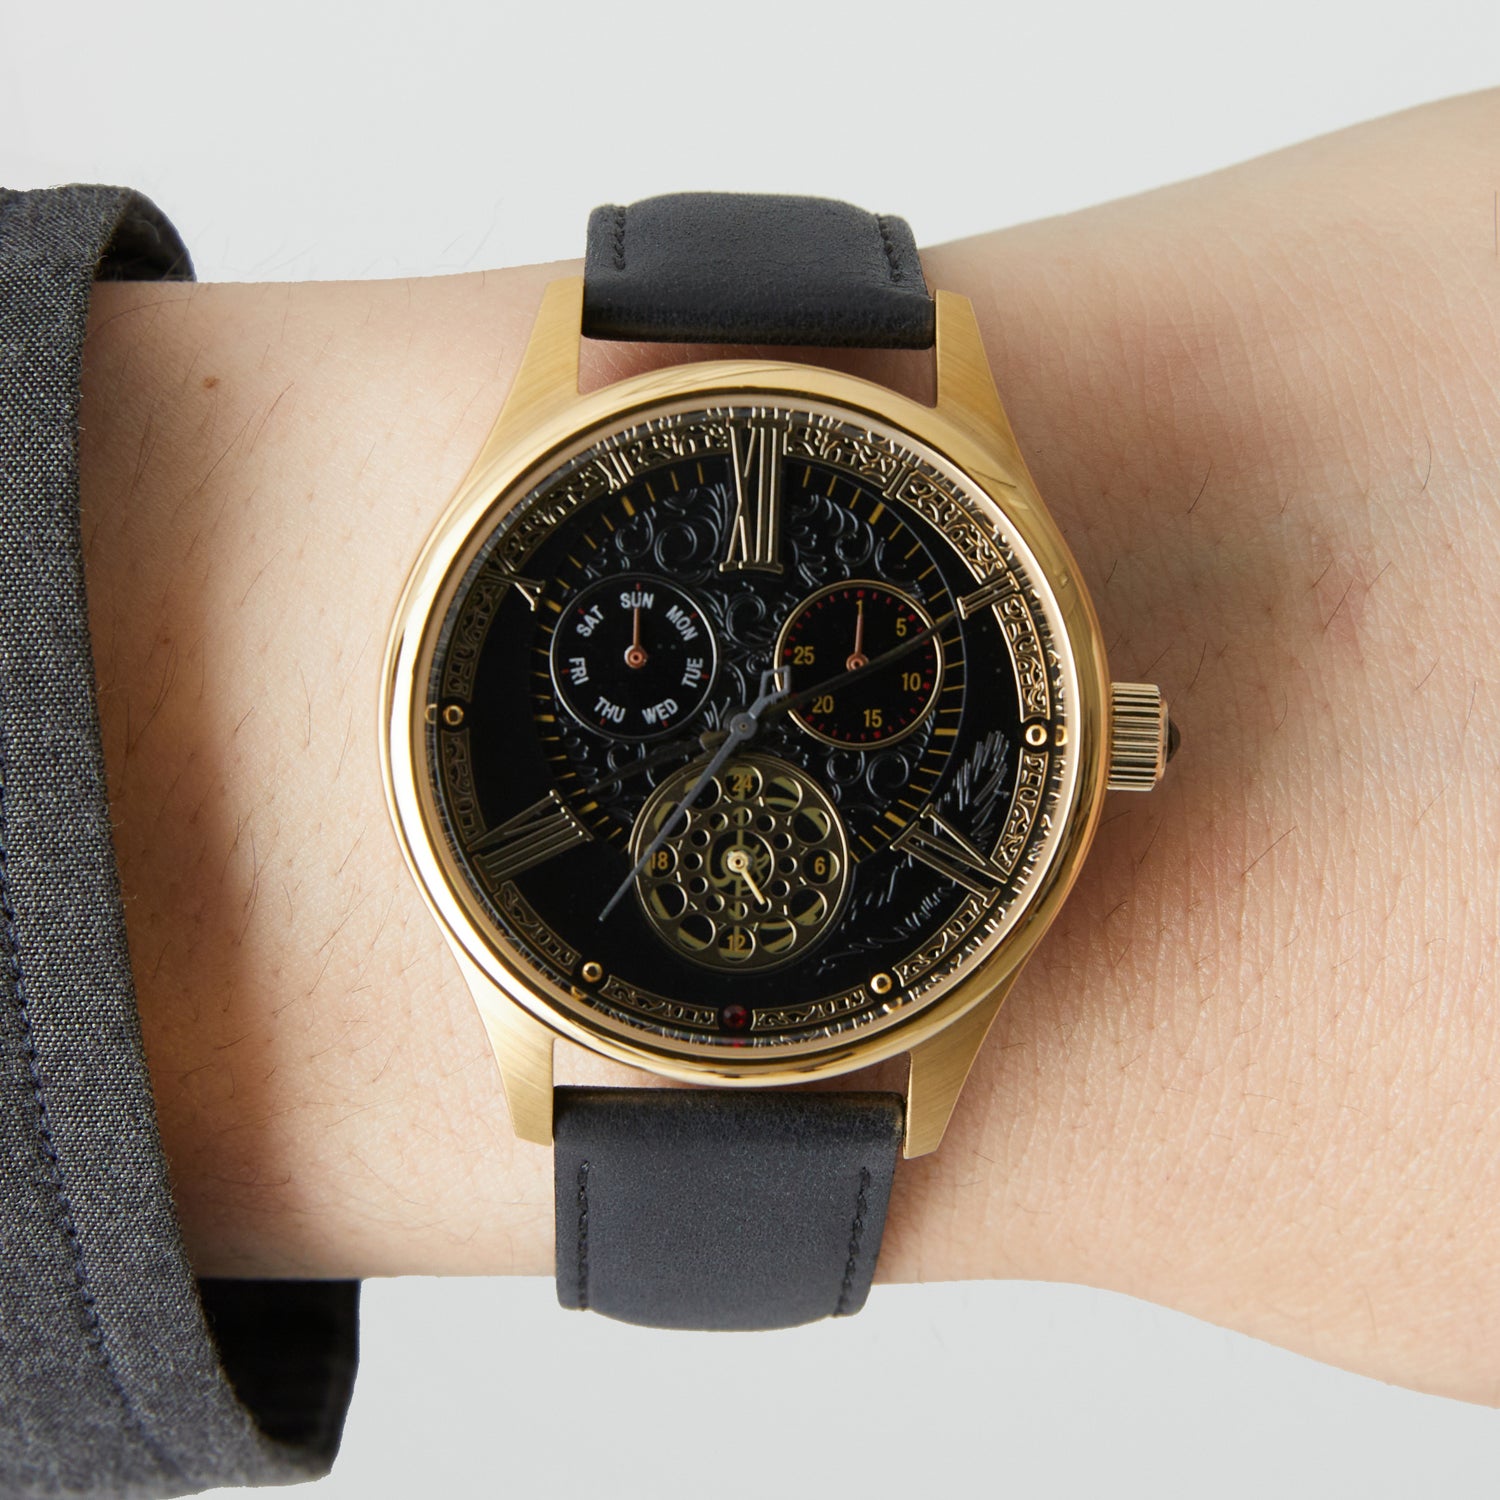 新品未使用品です時計塔のマリアモデル 腕時計 Bloodborne